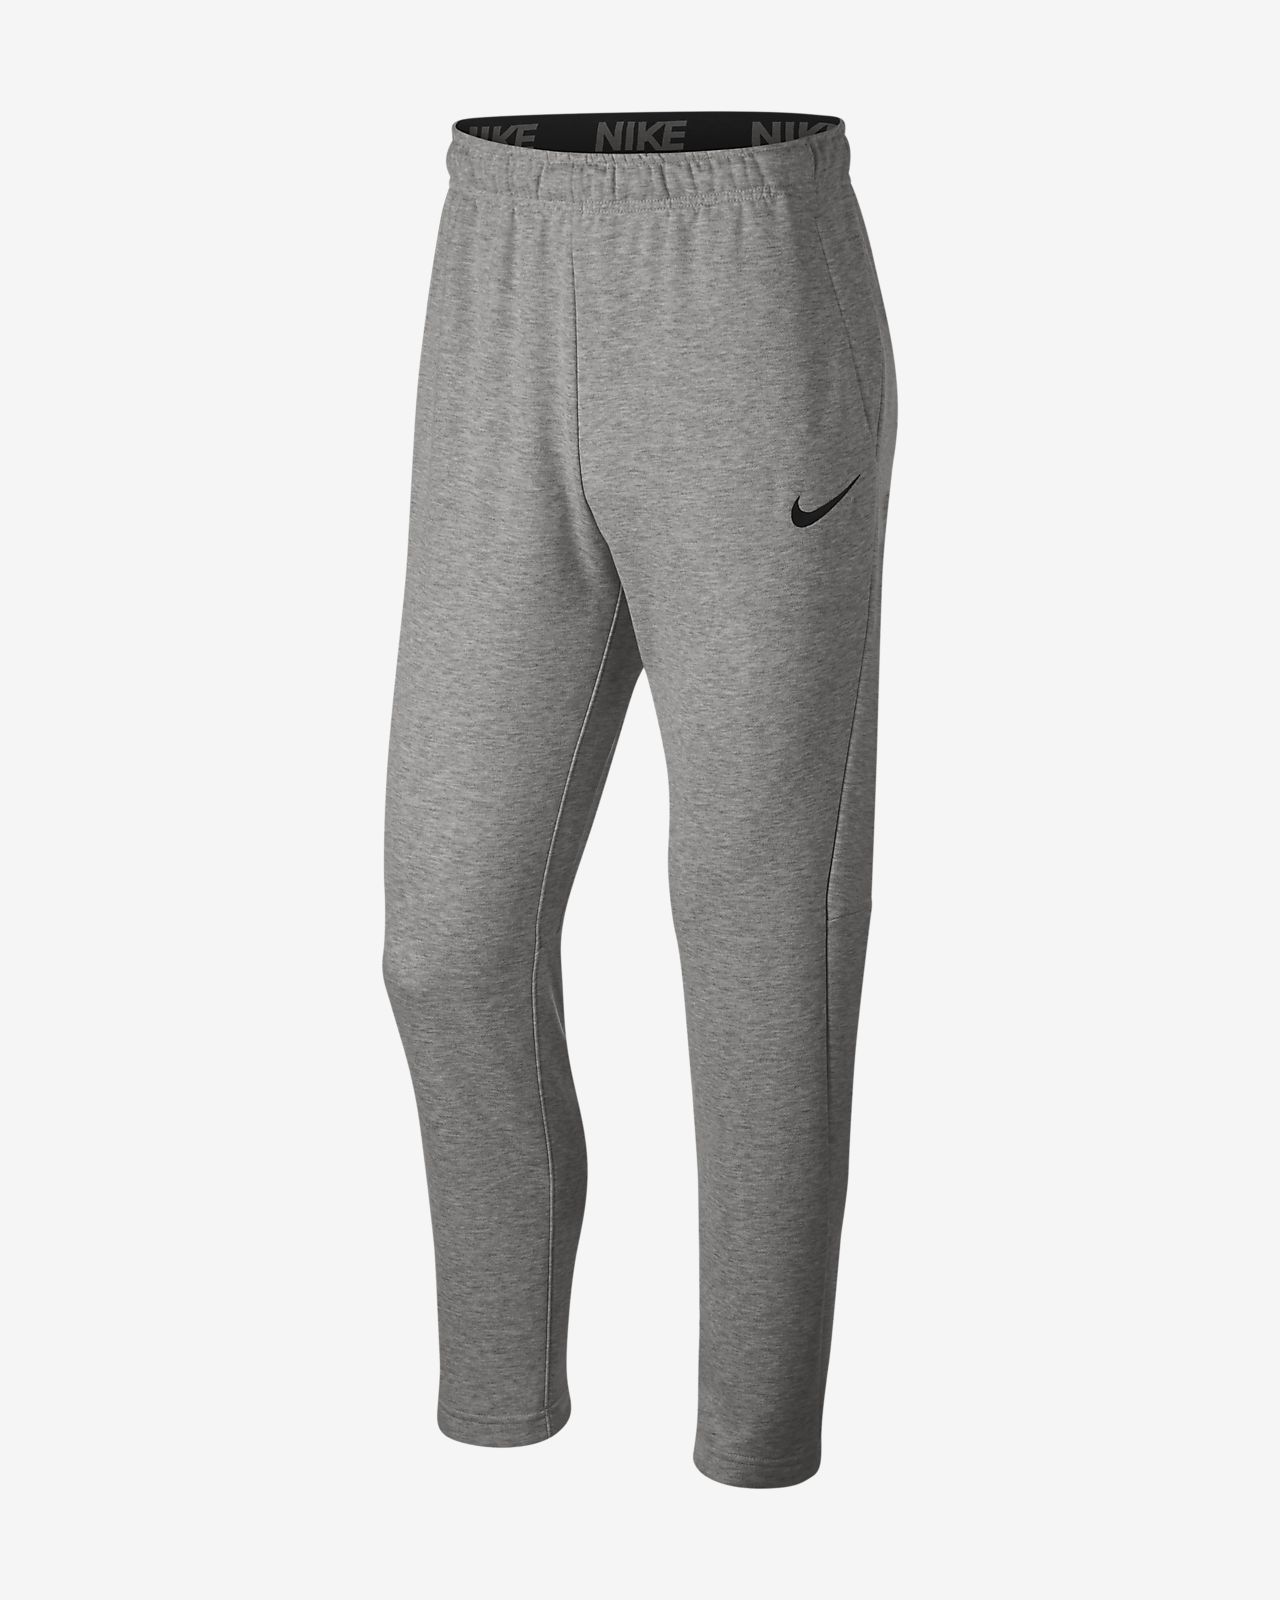 Nike Dri Fit Men S Training Pants